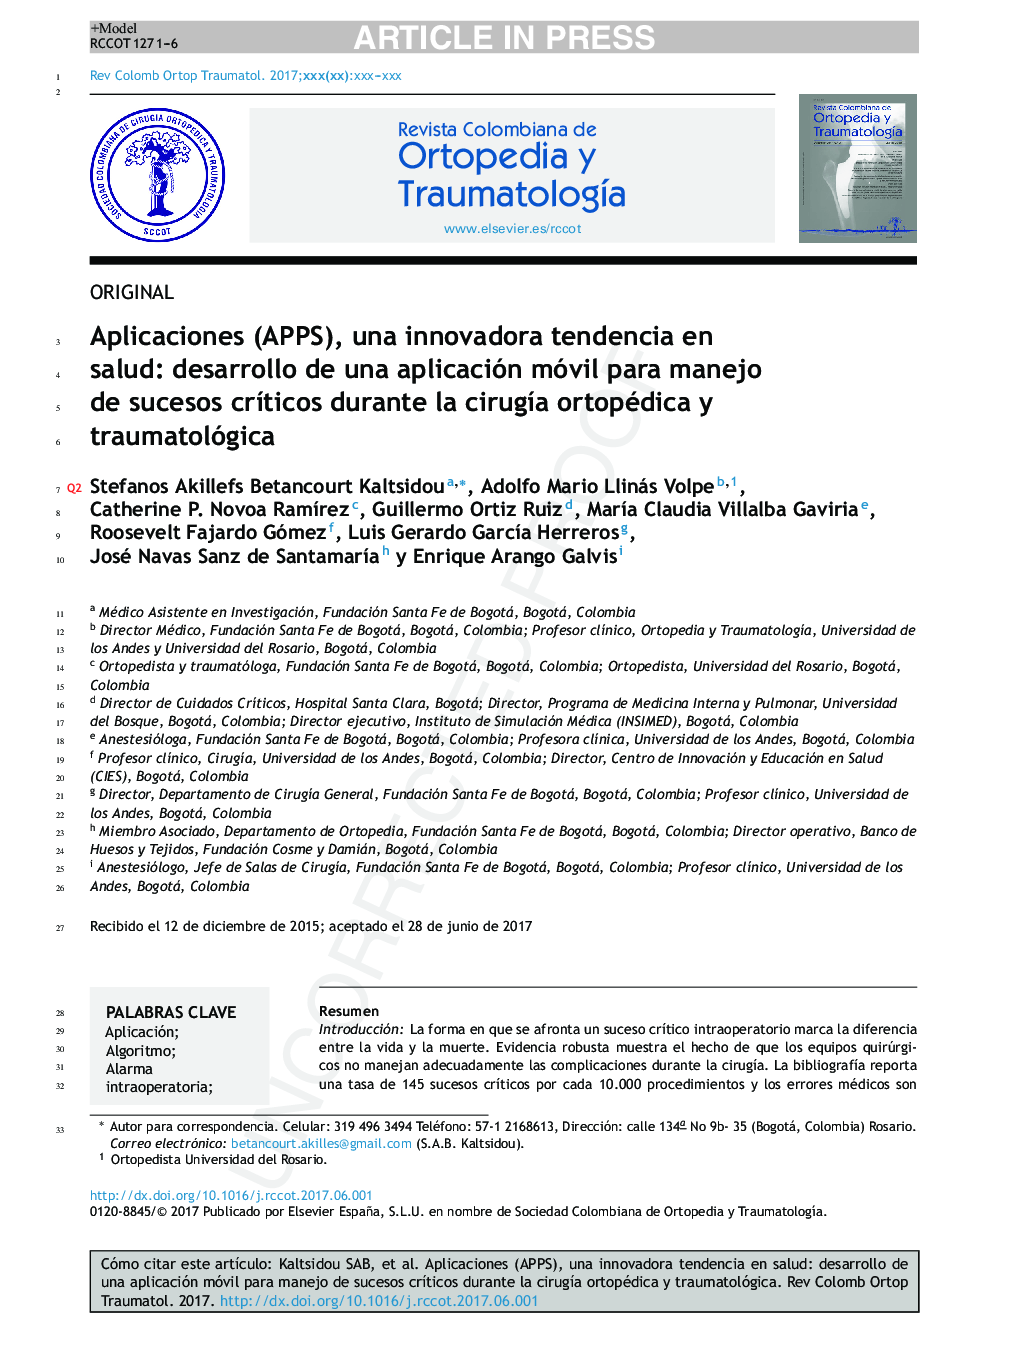 Aplicaciones (APPS), una innovadora tendencia en salud: desarrollo de una aplicación móvil para manejo de sucesos crÃ­ticos durante la cirugÃ­a ortopédica y traumatológica